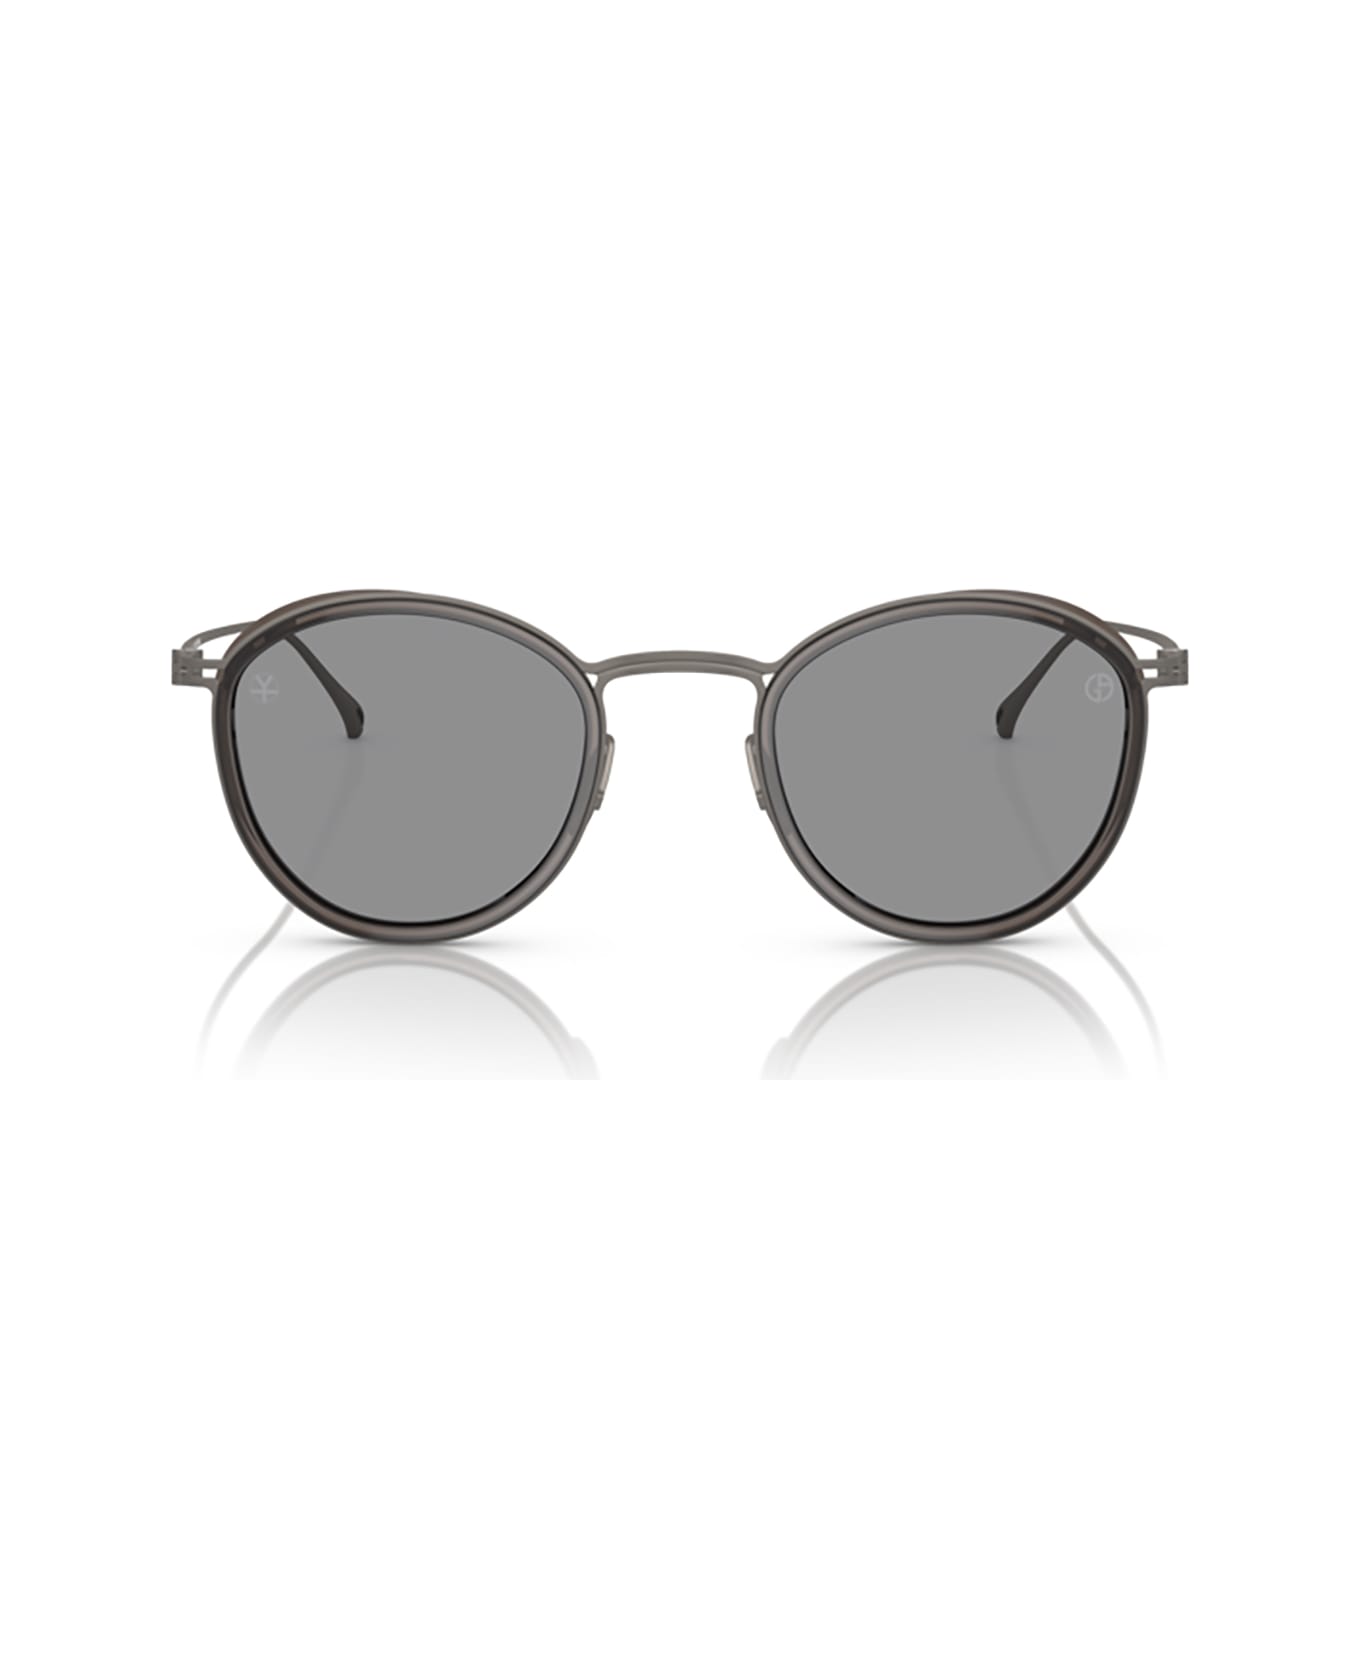 Giorgio Armani Ar6148t Transparent Grey Sunglasses - Transparent Grey